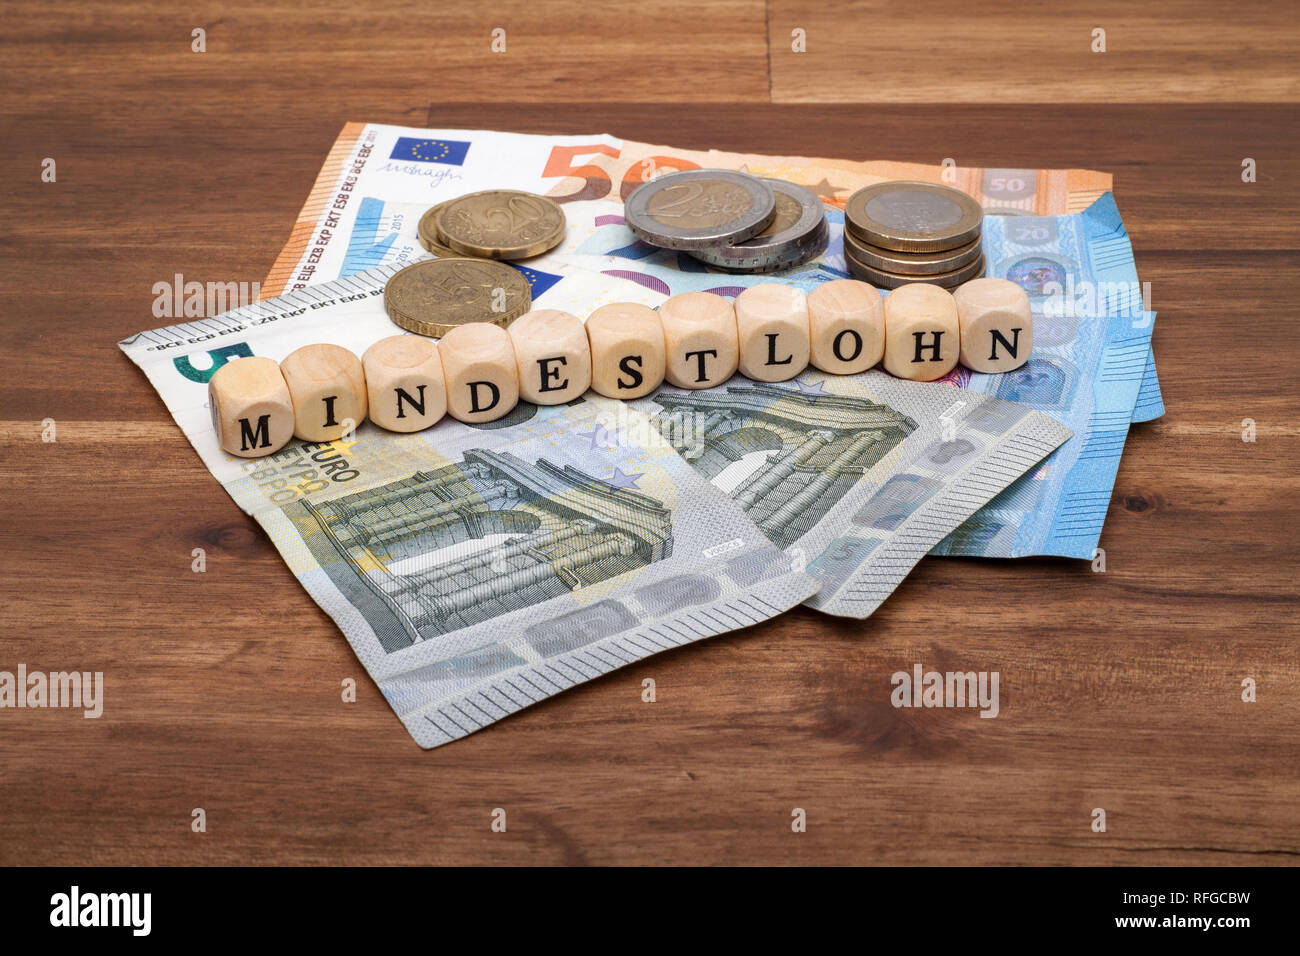 Die Euro Geldscheine und Münzen liegen auf dem Tisch mit dem Wort Mindestlohn Foto Stock